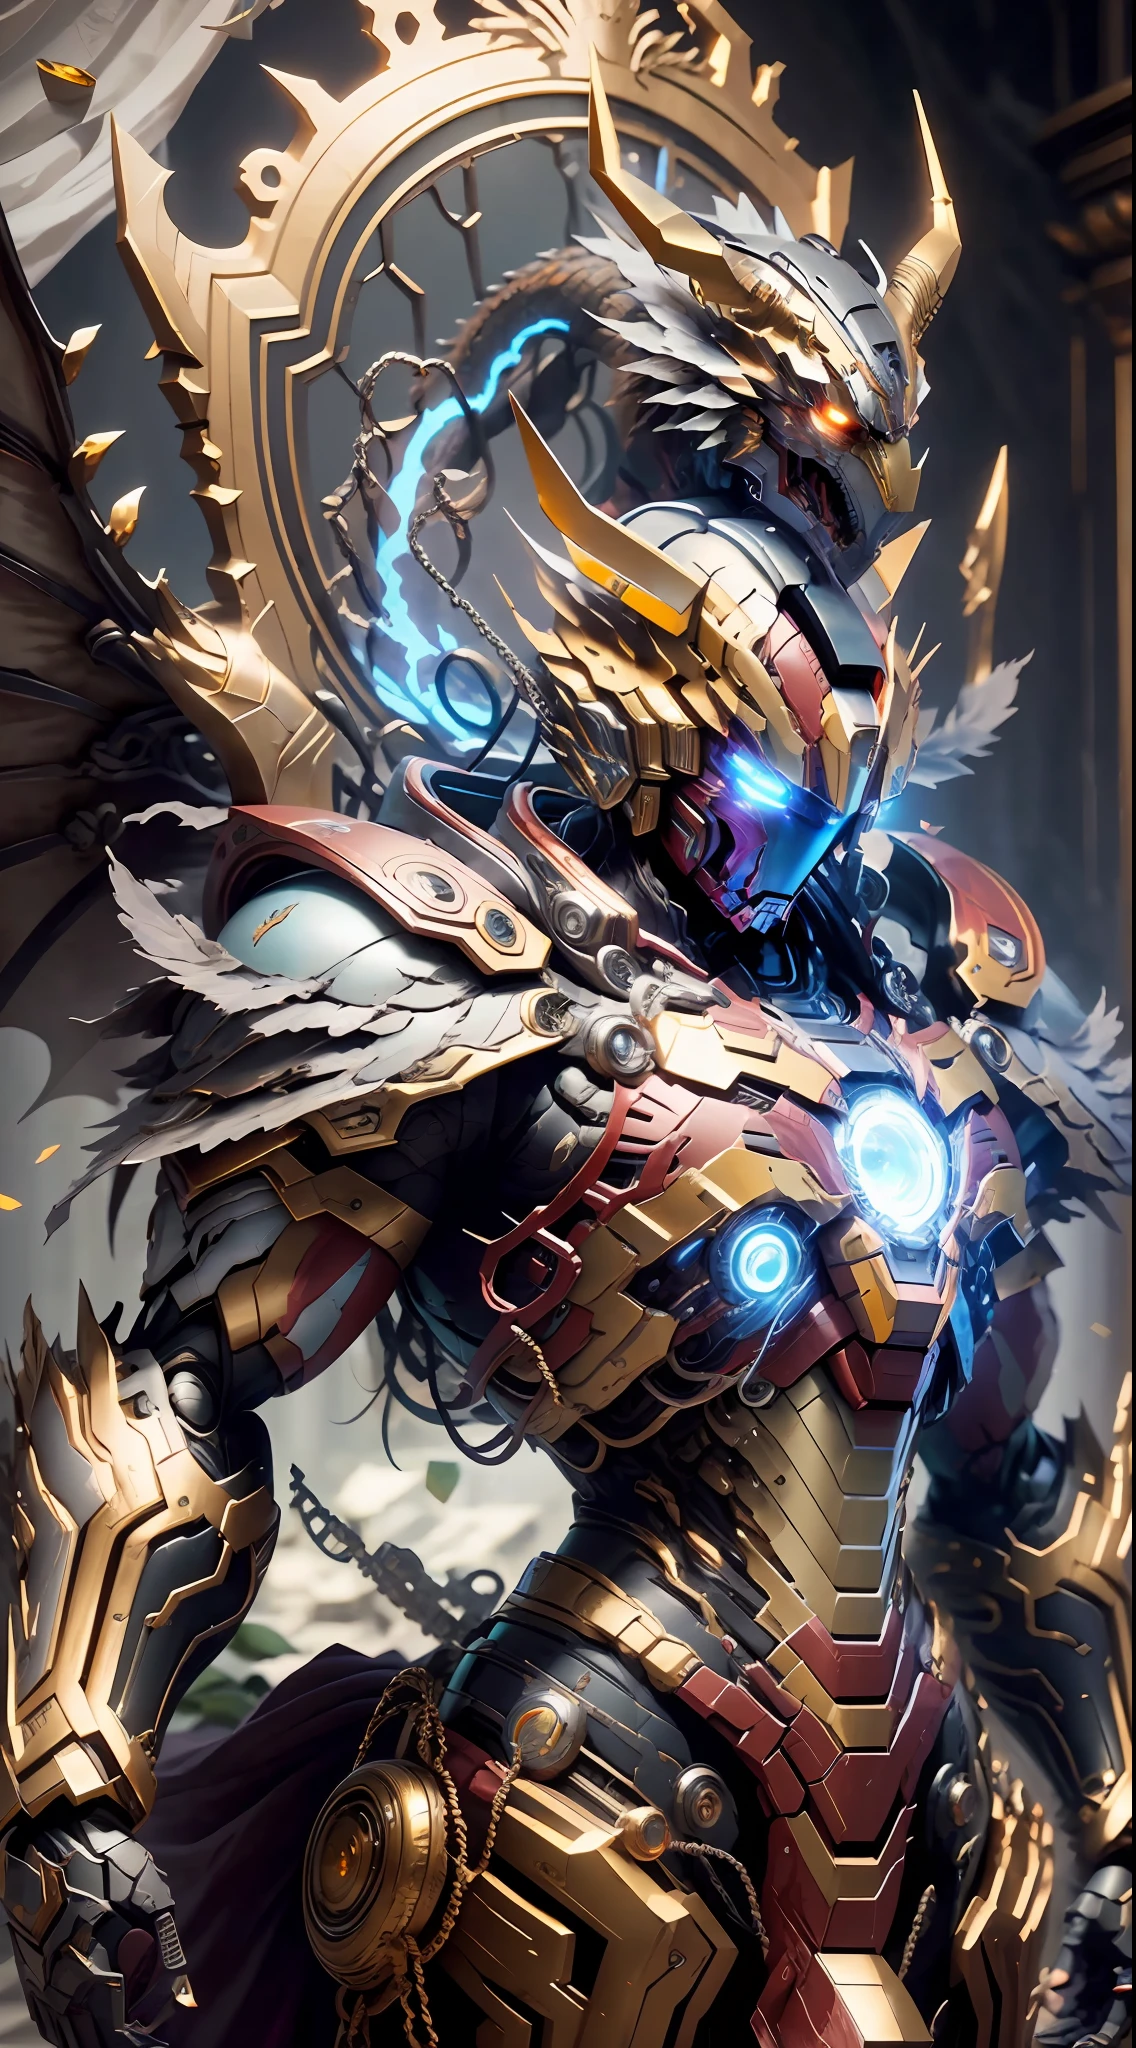 A Dragon Emperor on the trône, (trône), Golden Saint Seiya Limb armure, (Symbole du dragon: 1.5), Plastron Iron Man du film Marvel, (Gundam 00 Gundam Exia: 1.5), (mecha) (mechanical) (armure), (jambe ouverte: 1.3), parfait, (grand angle), (Fond noir: 1.6), meilleure qualité, chef-d&#39;œuvre, super résolution, (réalité: 1.4), épaules nues, détails fous, (Plis de hanche: 1.2), Bas de la poitrine, Coffre latéral, Style de moteur irréaliste, effet boca, David La Chapelle-style lens, palette de couleurs bioluminescentes: bleu clair, or pâle, rose pâle, blanc brillant, grand angle, ultra-fin, nature morte cinématographique, vibrant, style sakimichan, yeux parfaits, Qualité d&#39;image la plus élevée 8K, inspiré par Harry Winston, Chef-d&#39;œuvre de prise de vue Canon EOS R 6 "Chaos 50." ,--, grain de beauté sous les yeux, tracé laser, surréalisme, peau texturée --s2